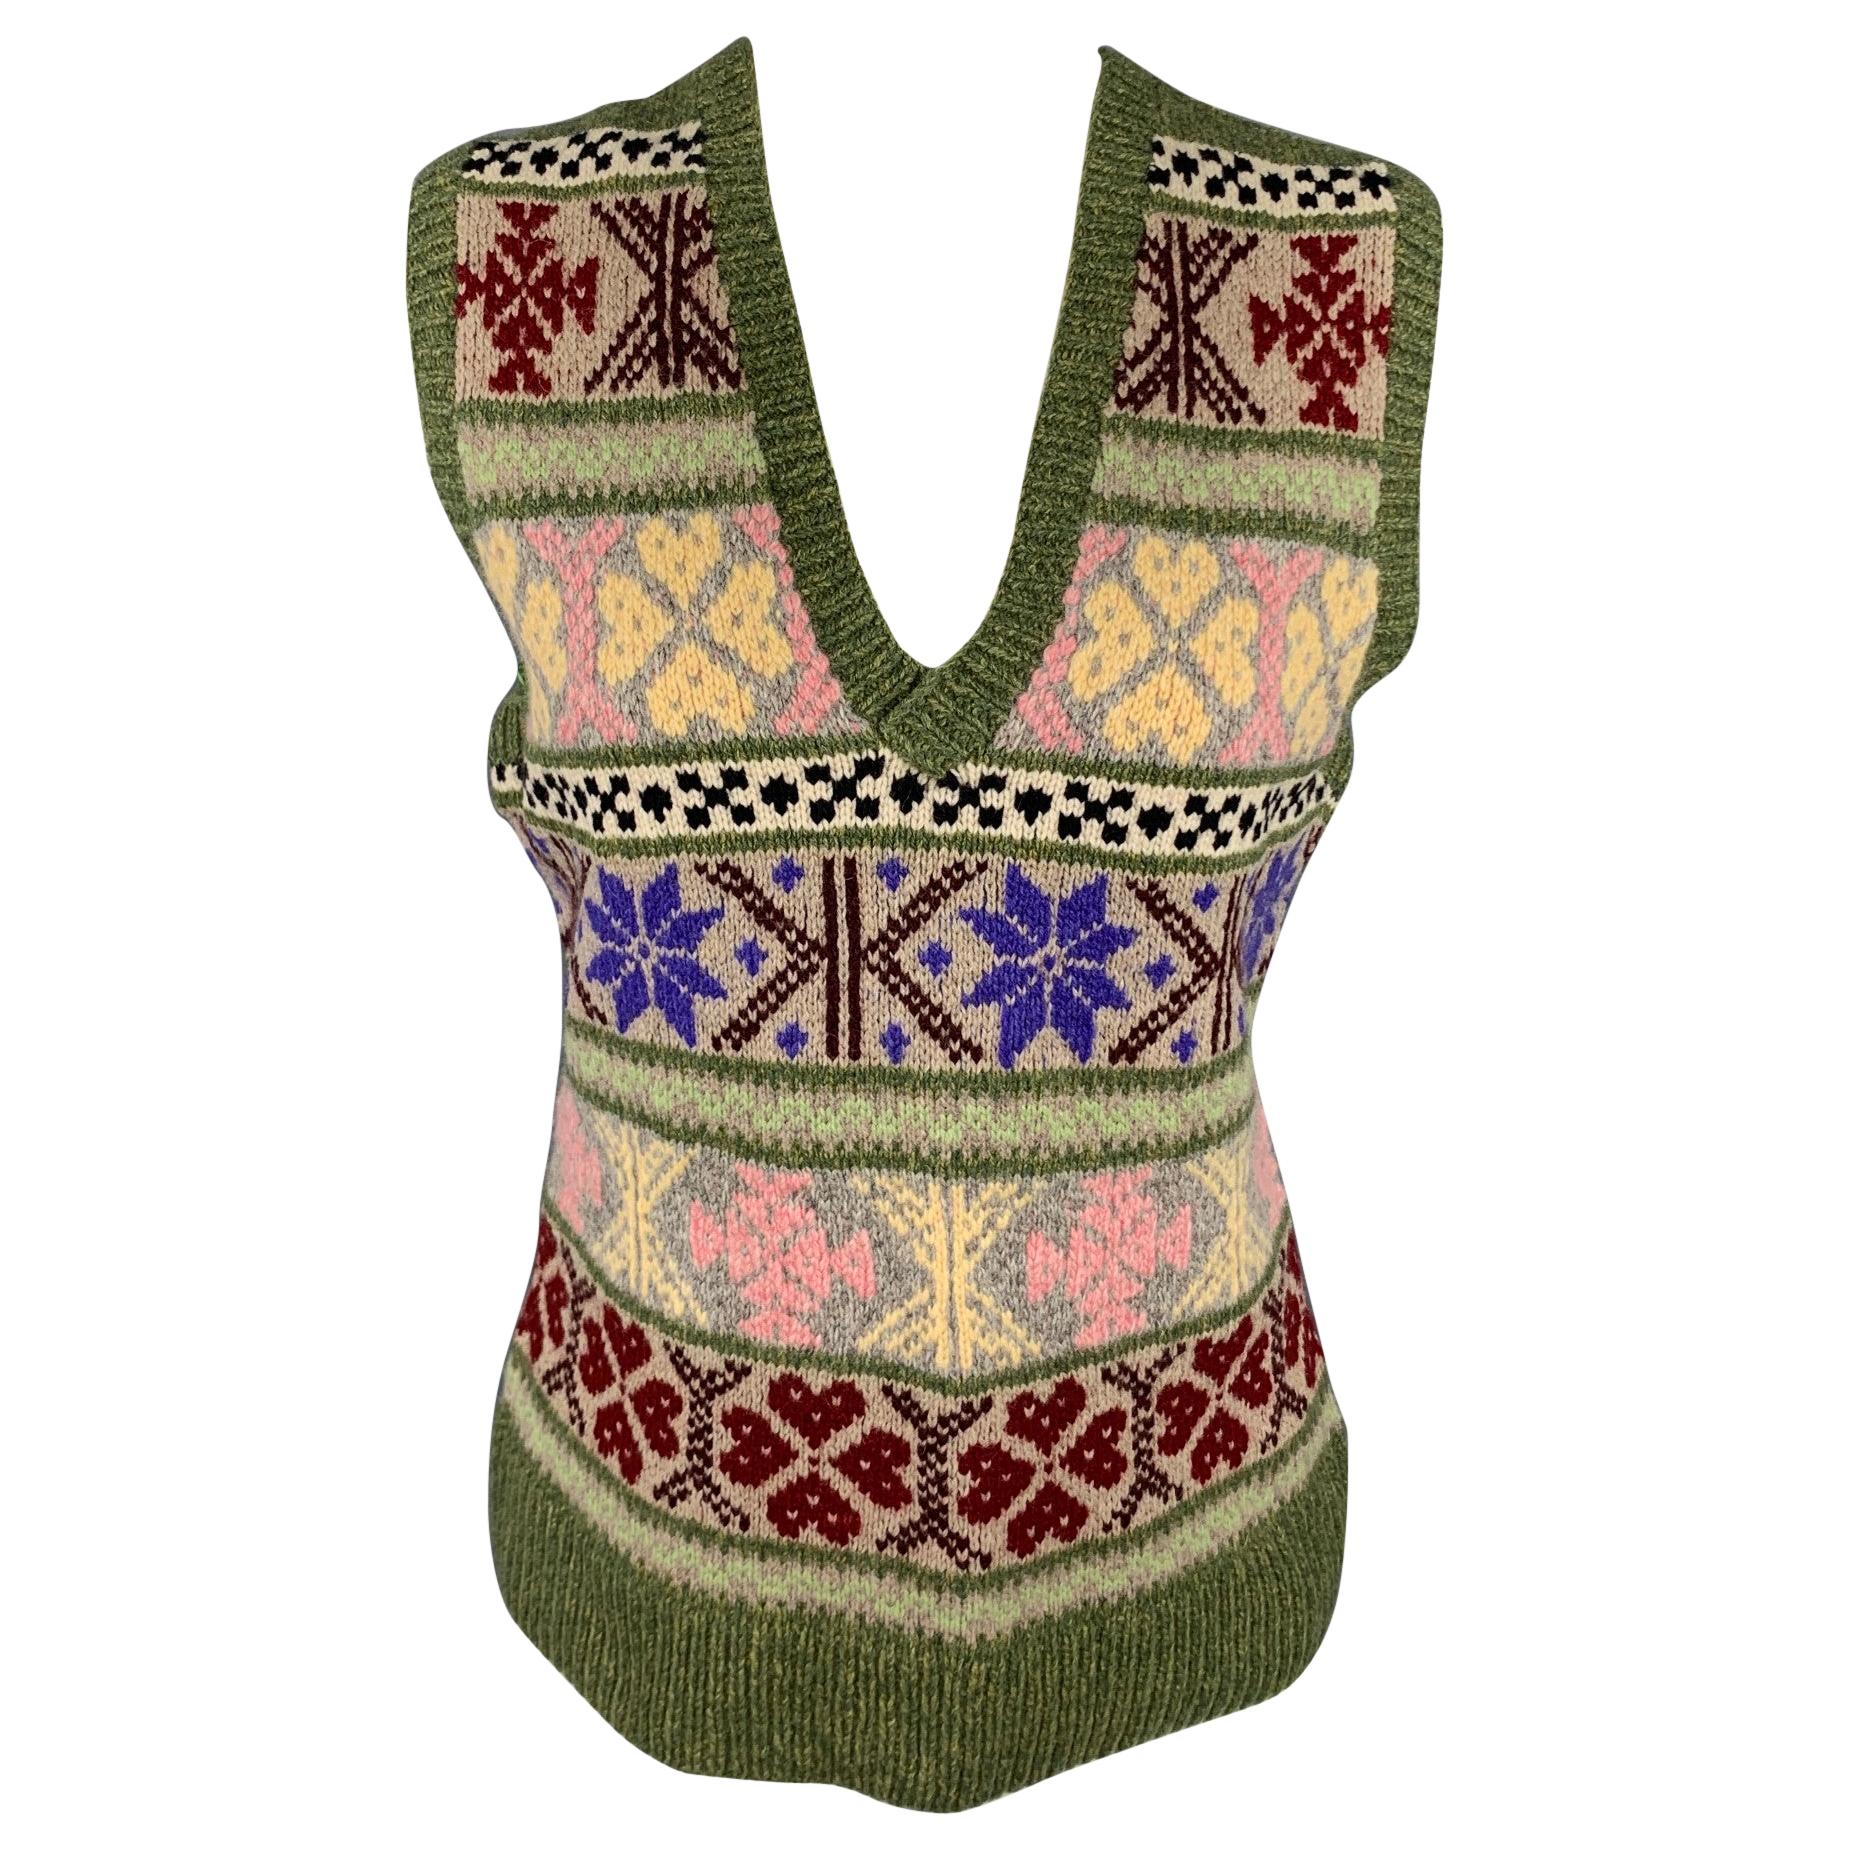 RALPH LAUREN Collection Size M Multi-Color Hand Knit Cashmere / Wool Vest